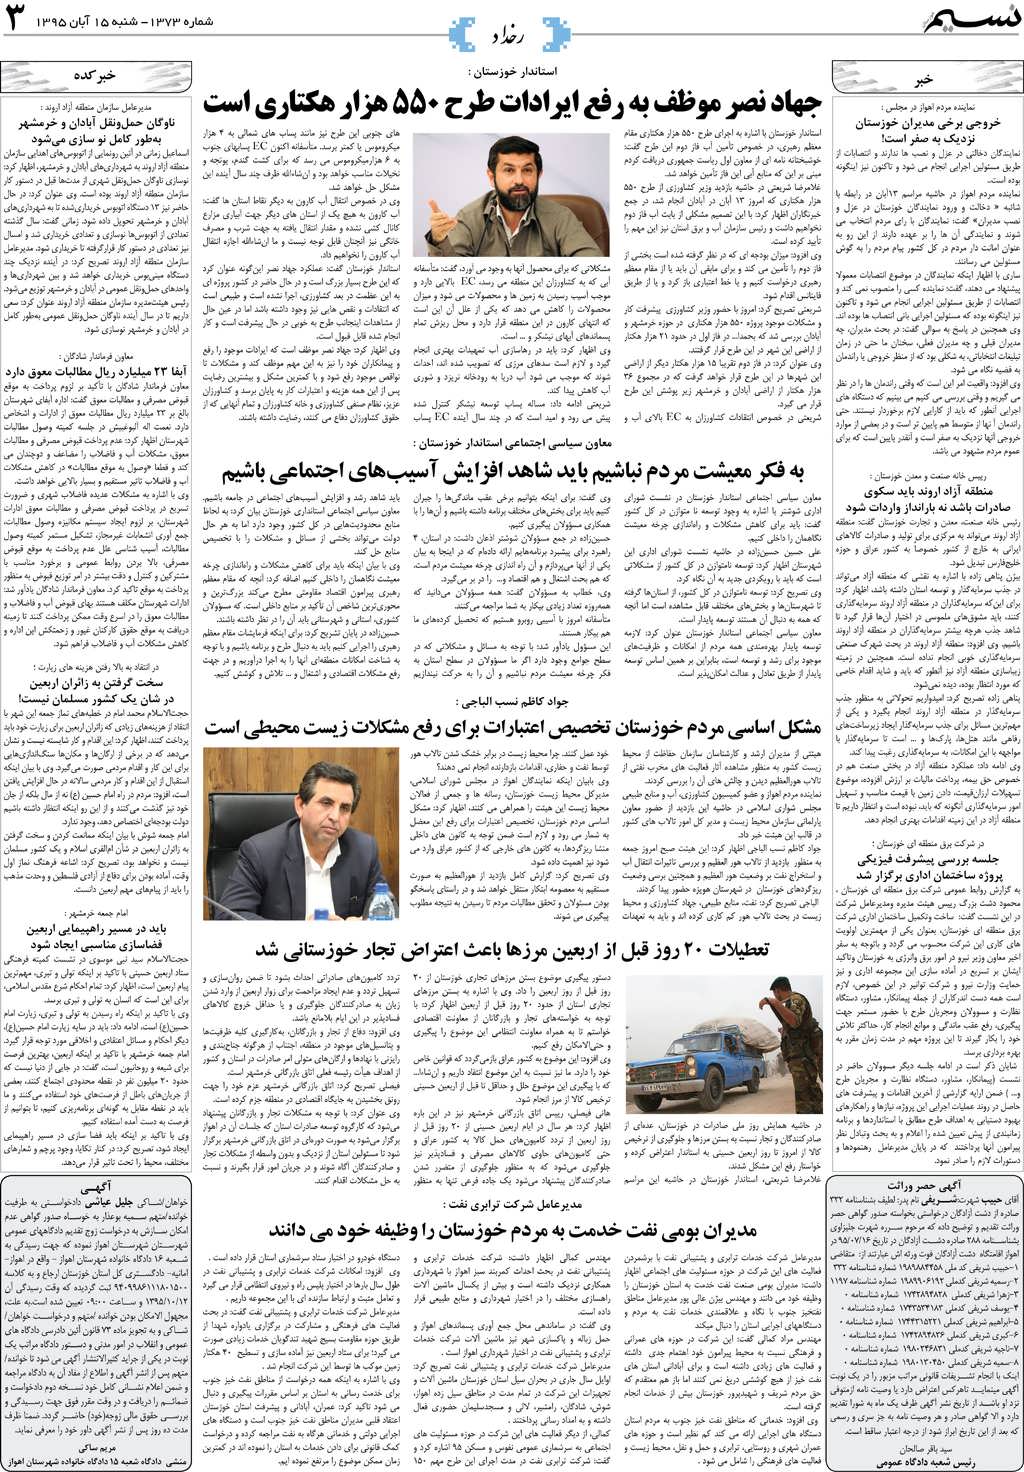 صفحه رخداد روزنامه نسیم شماره 1373